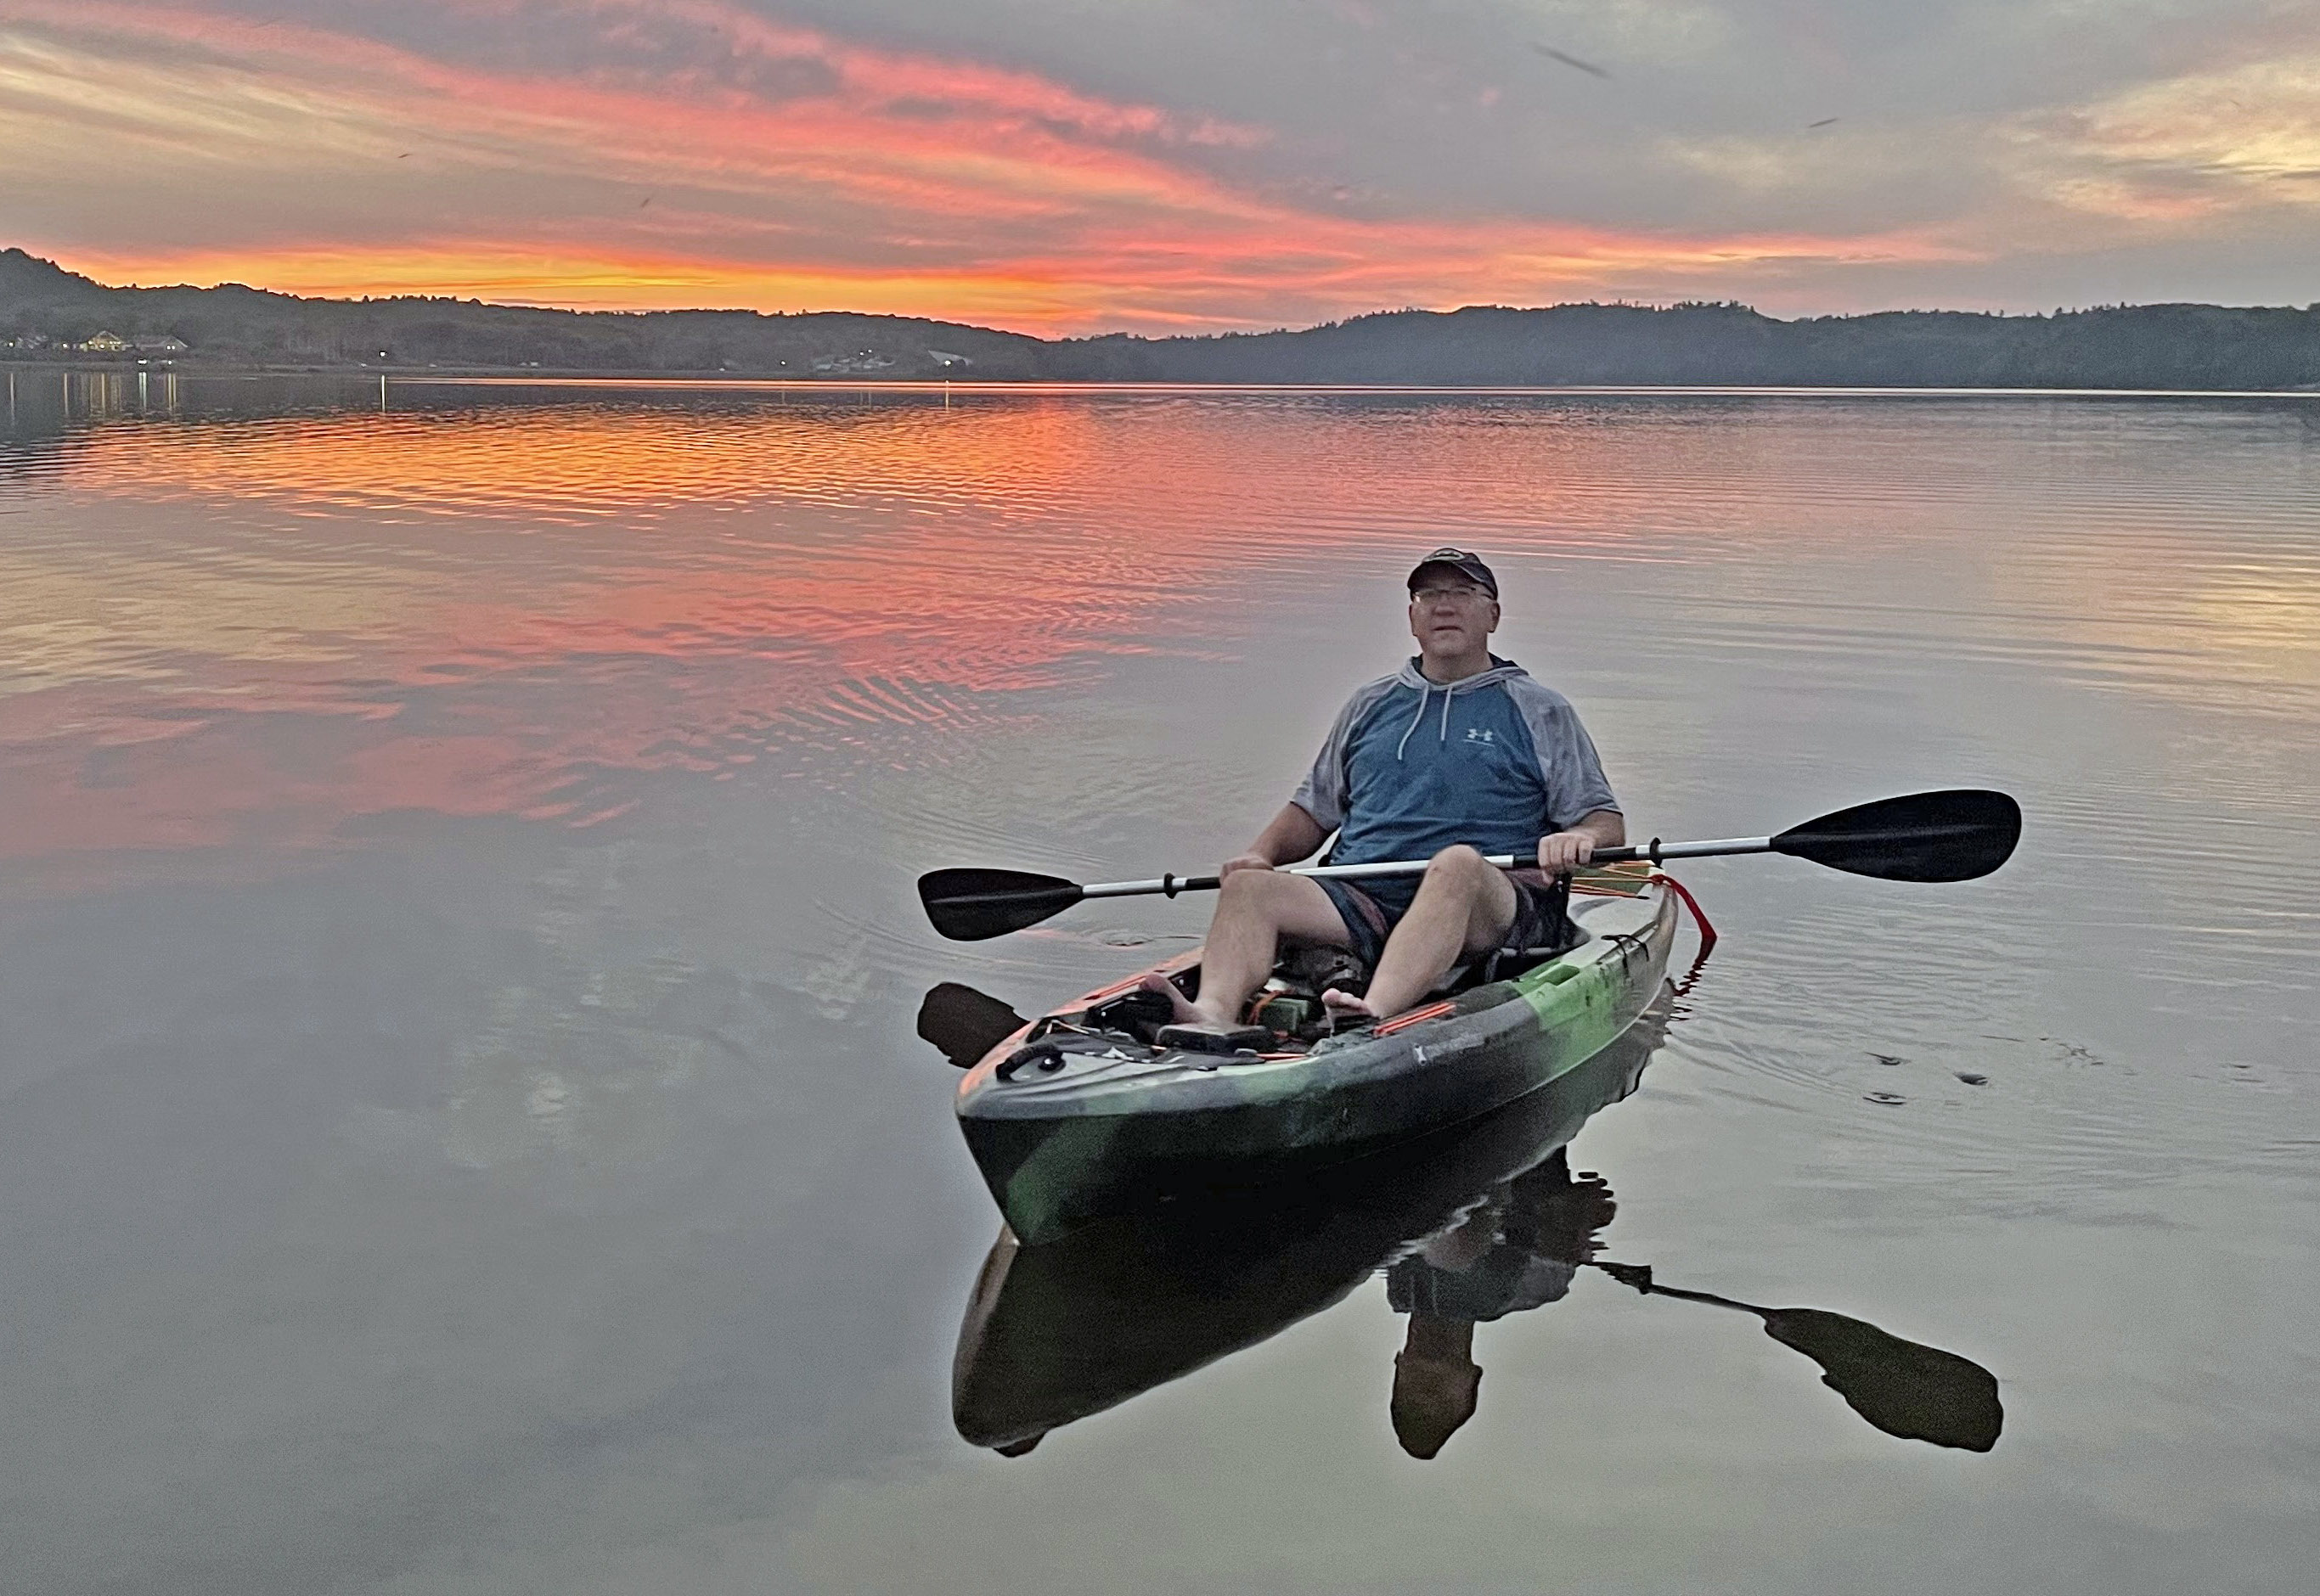 Toutant kayaking at sunset